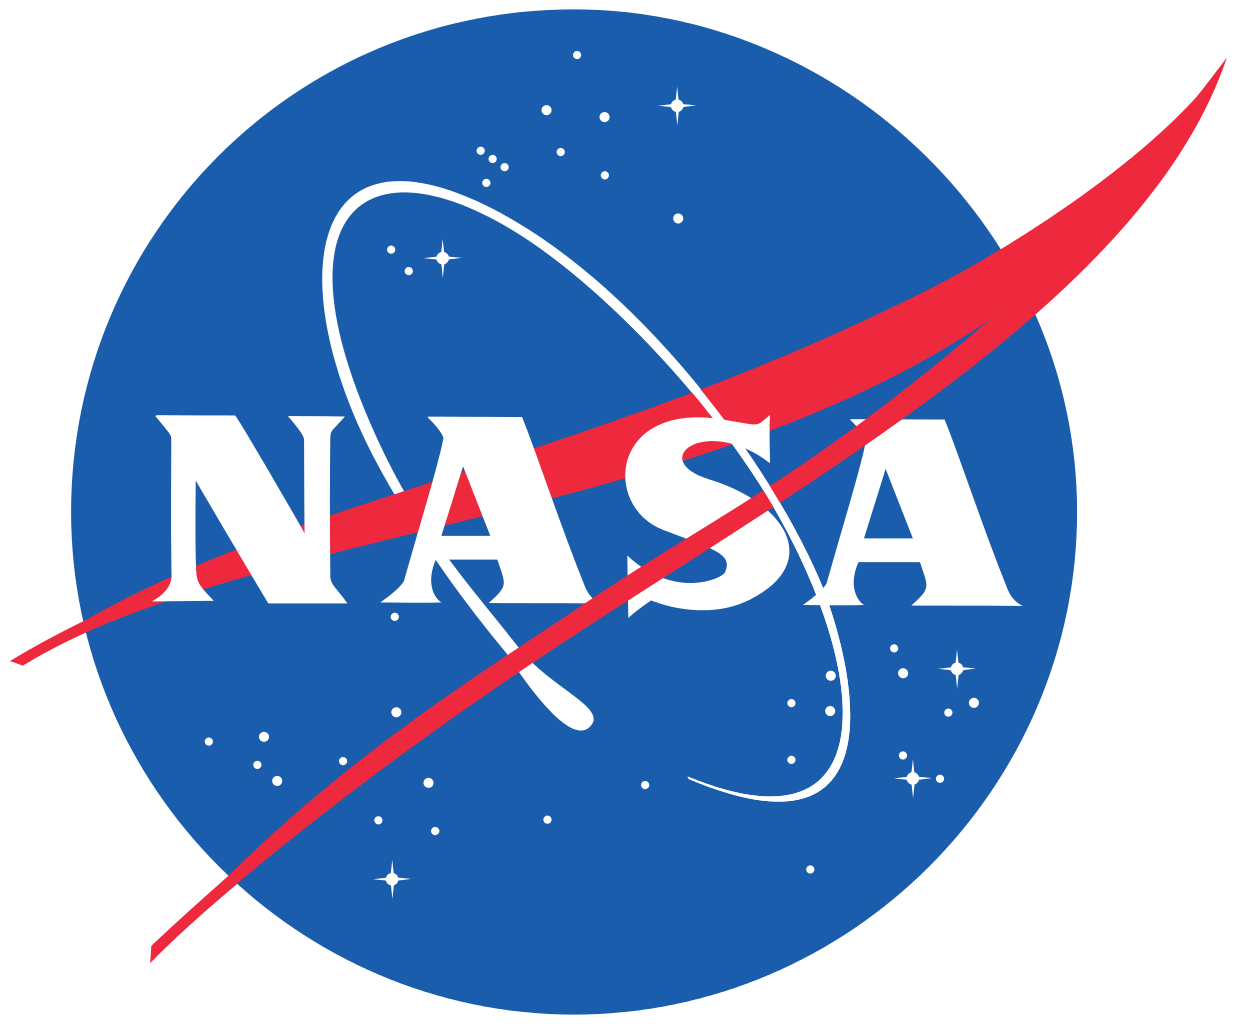 NASA logo and symbol, meaning, history, PNG